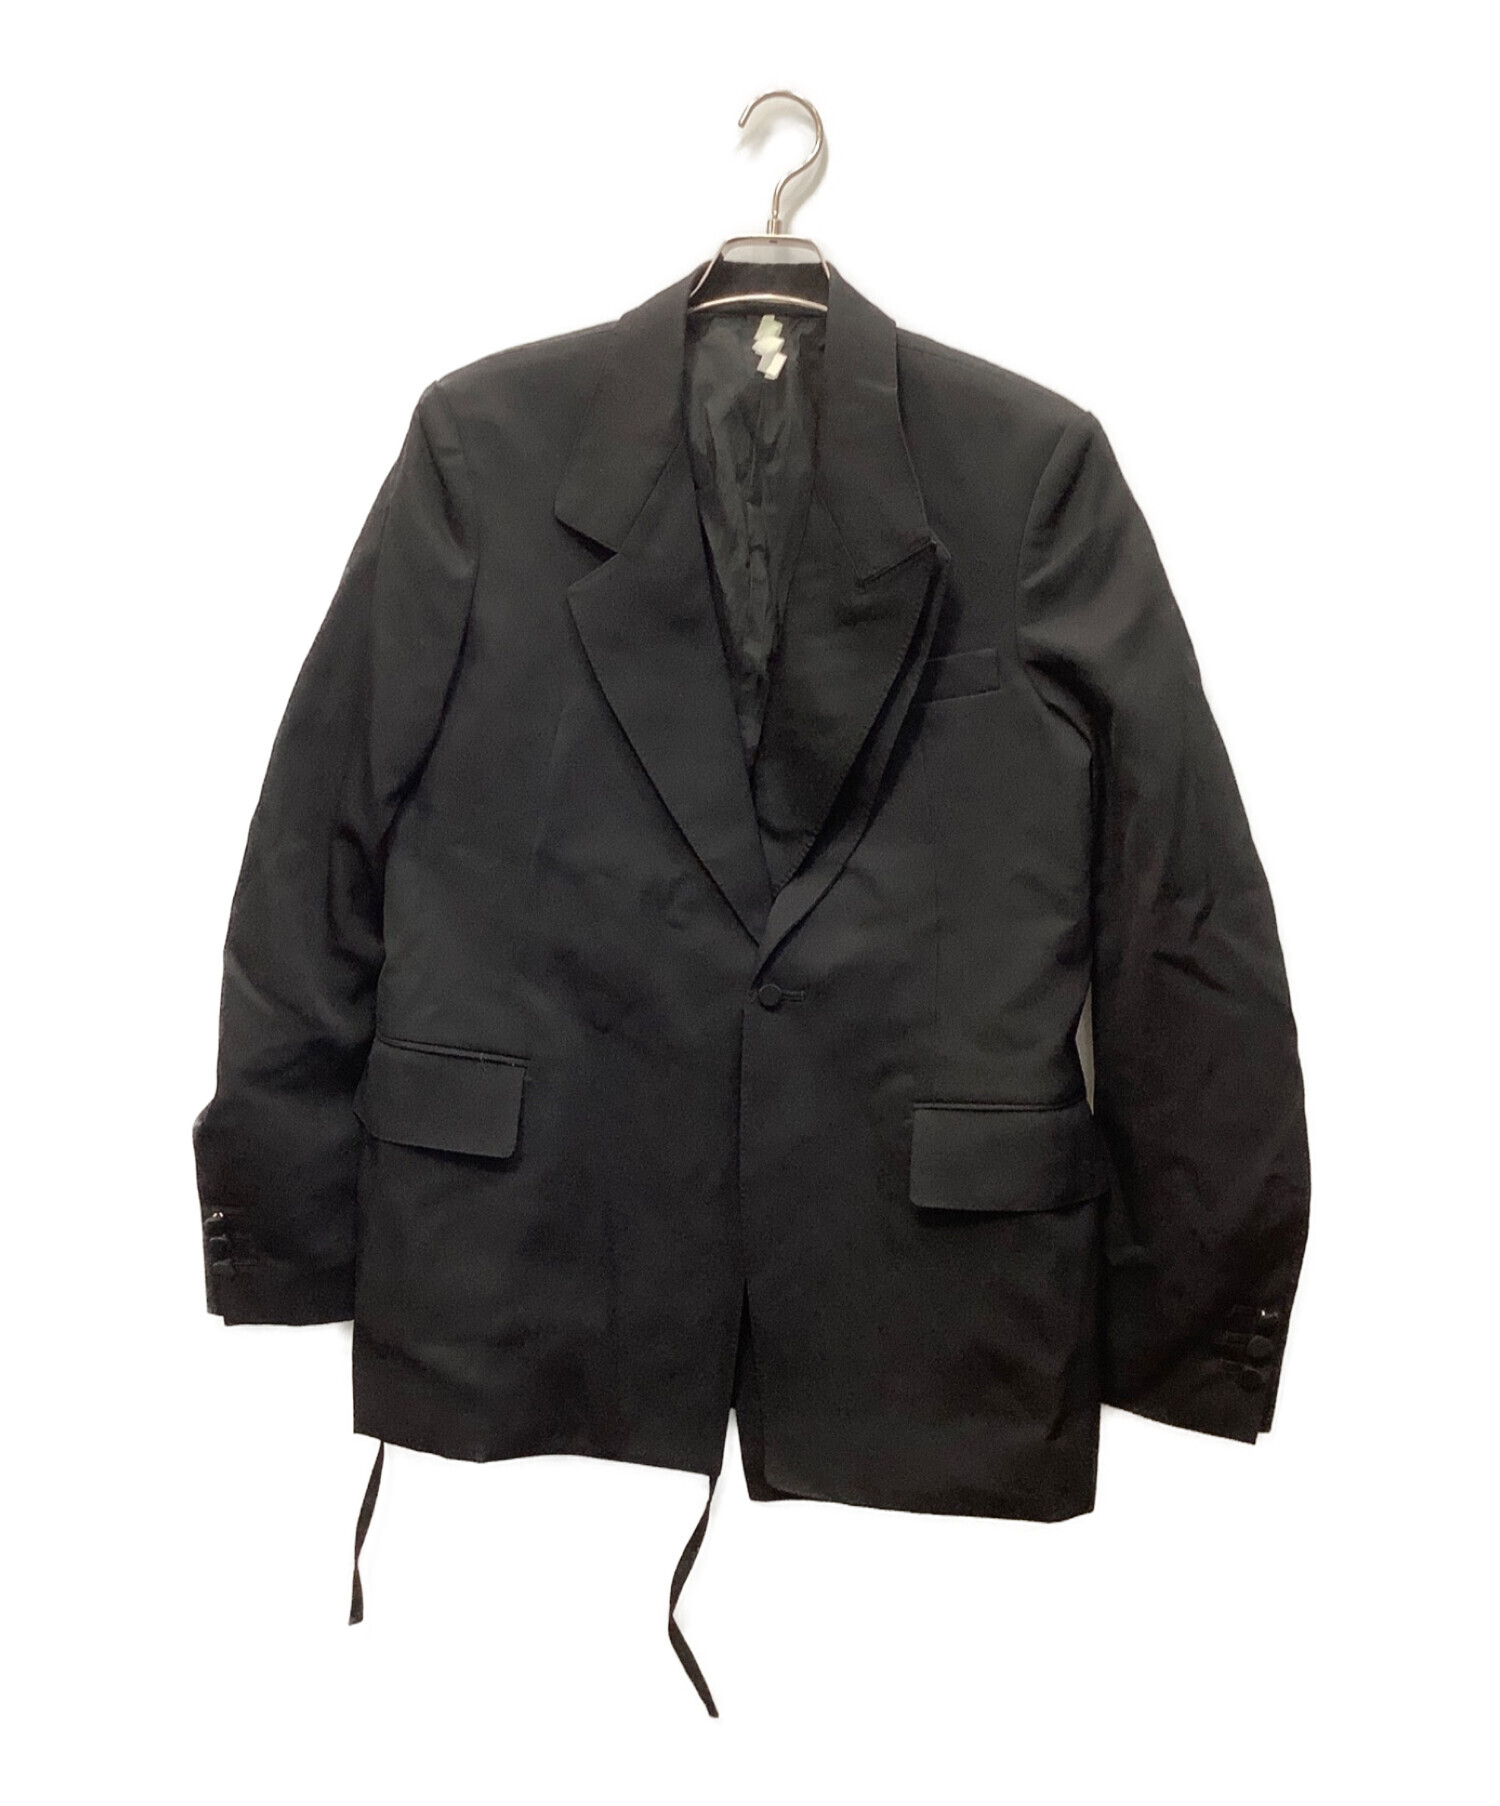 SOSHIOTSUKI (ソウシ オオツキ) ダブルスモーキングジャケット ブラック サイズ:46